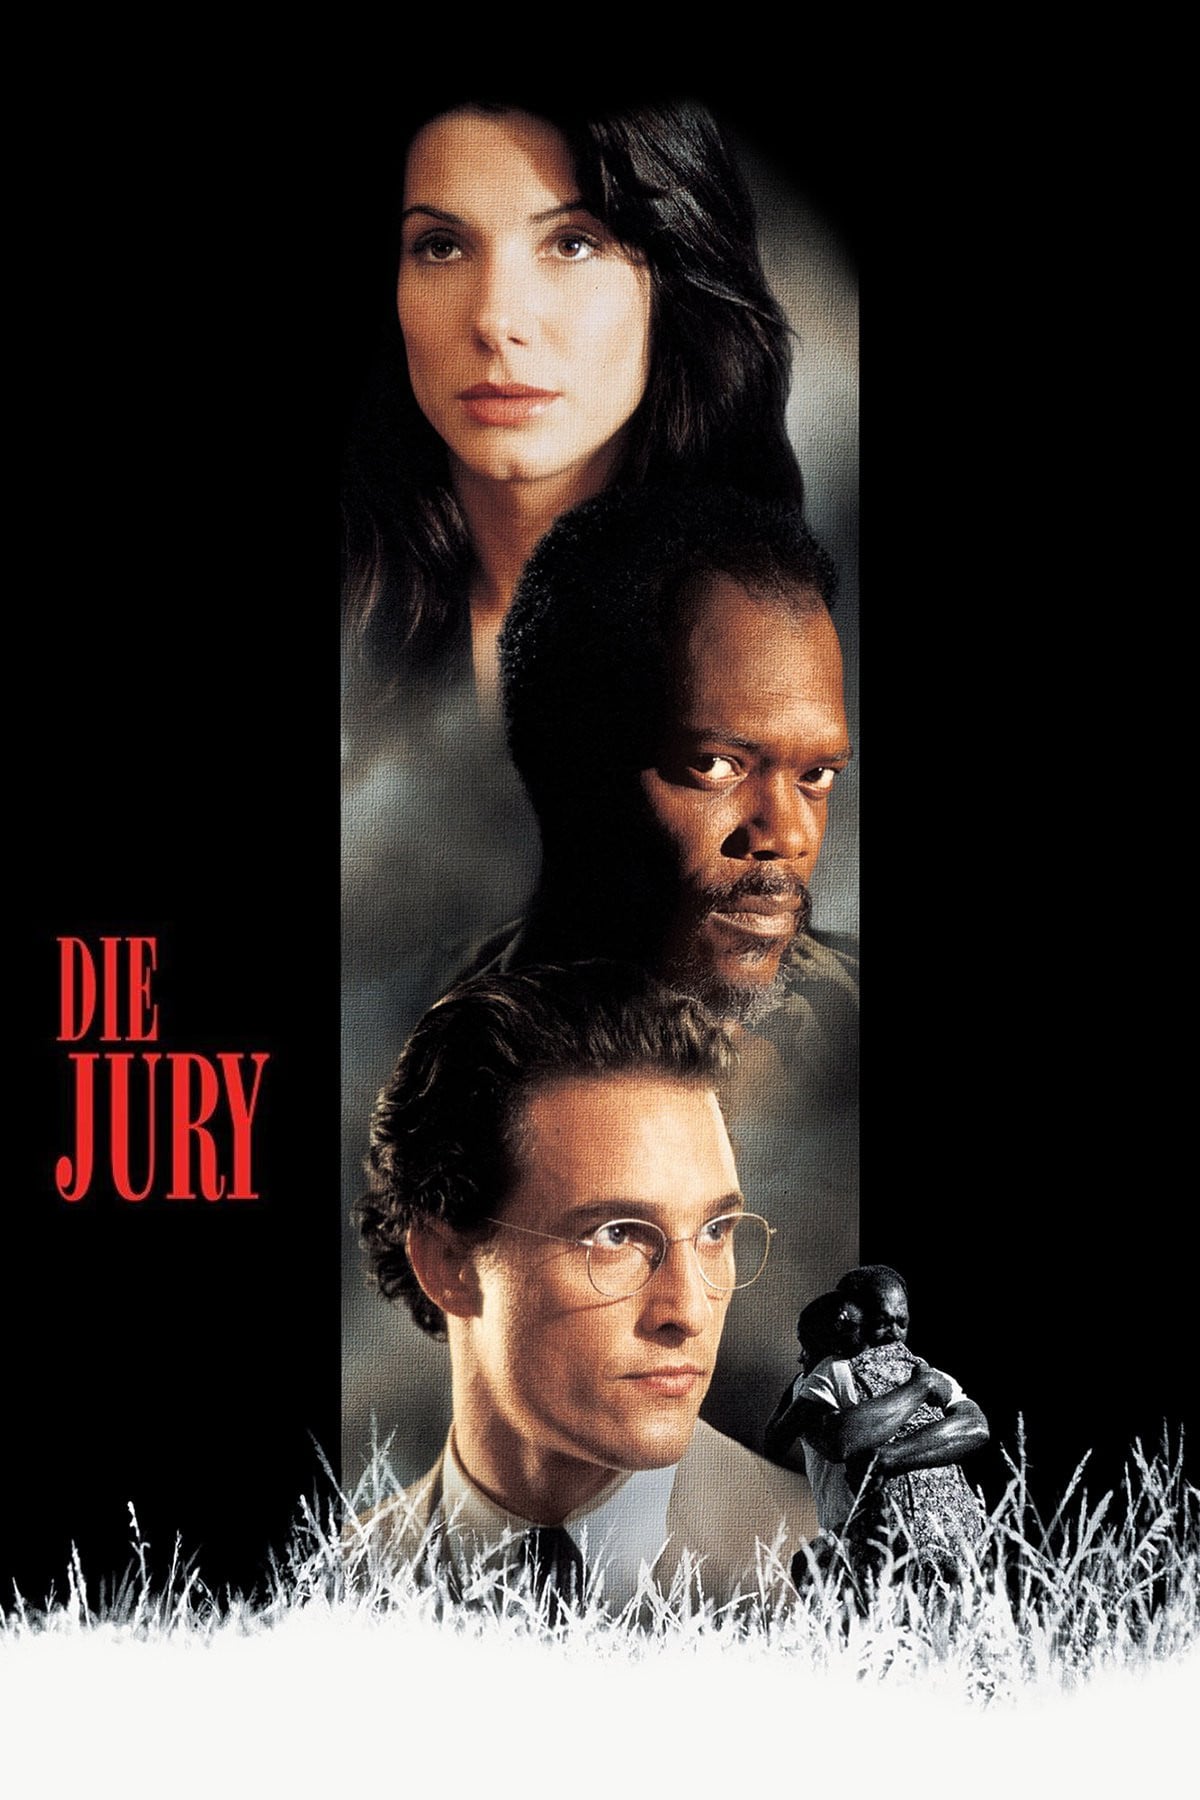 Plakat von "Die Jury"